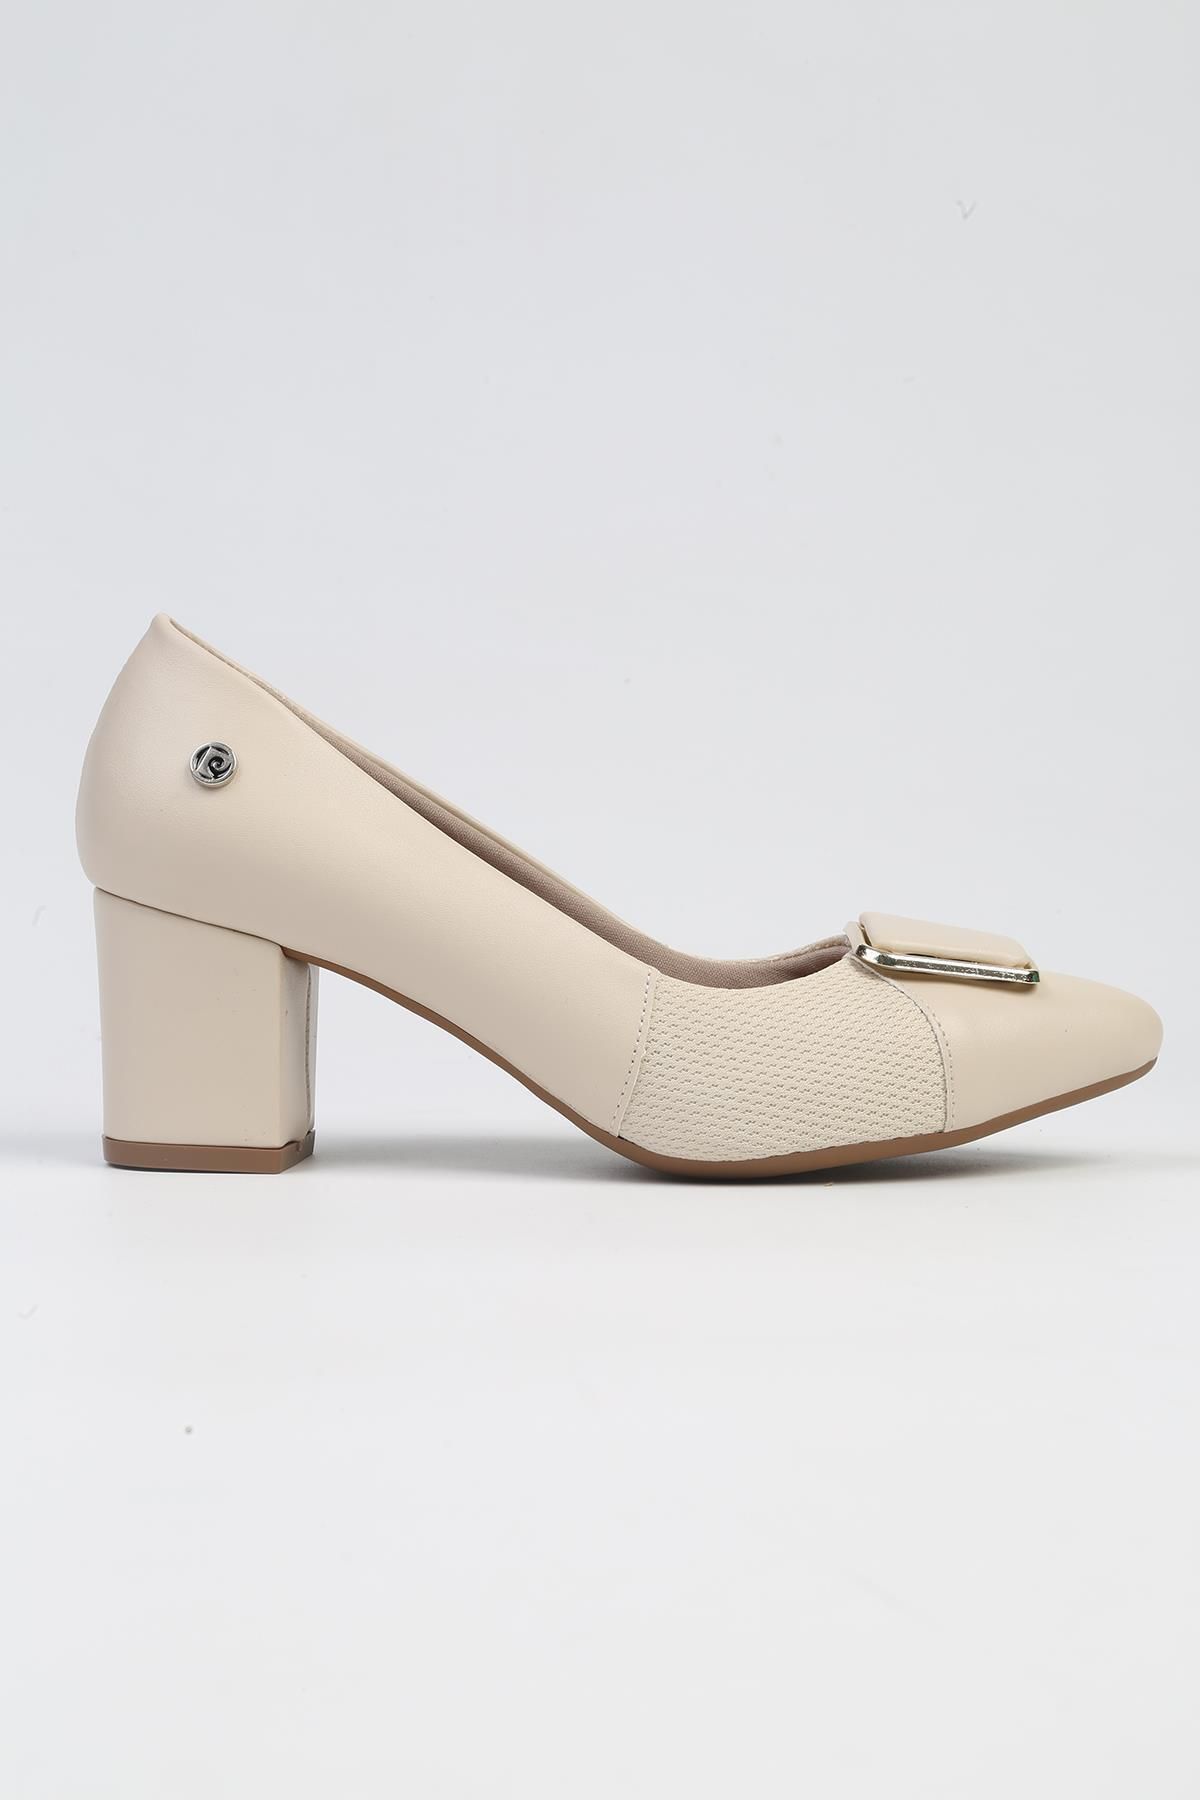 Pierre Cardin ® | PC-53099- 3592 Krem Cilt-Kadın Topuklu Ayakkabı